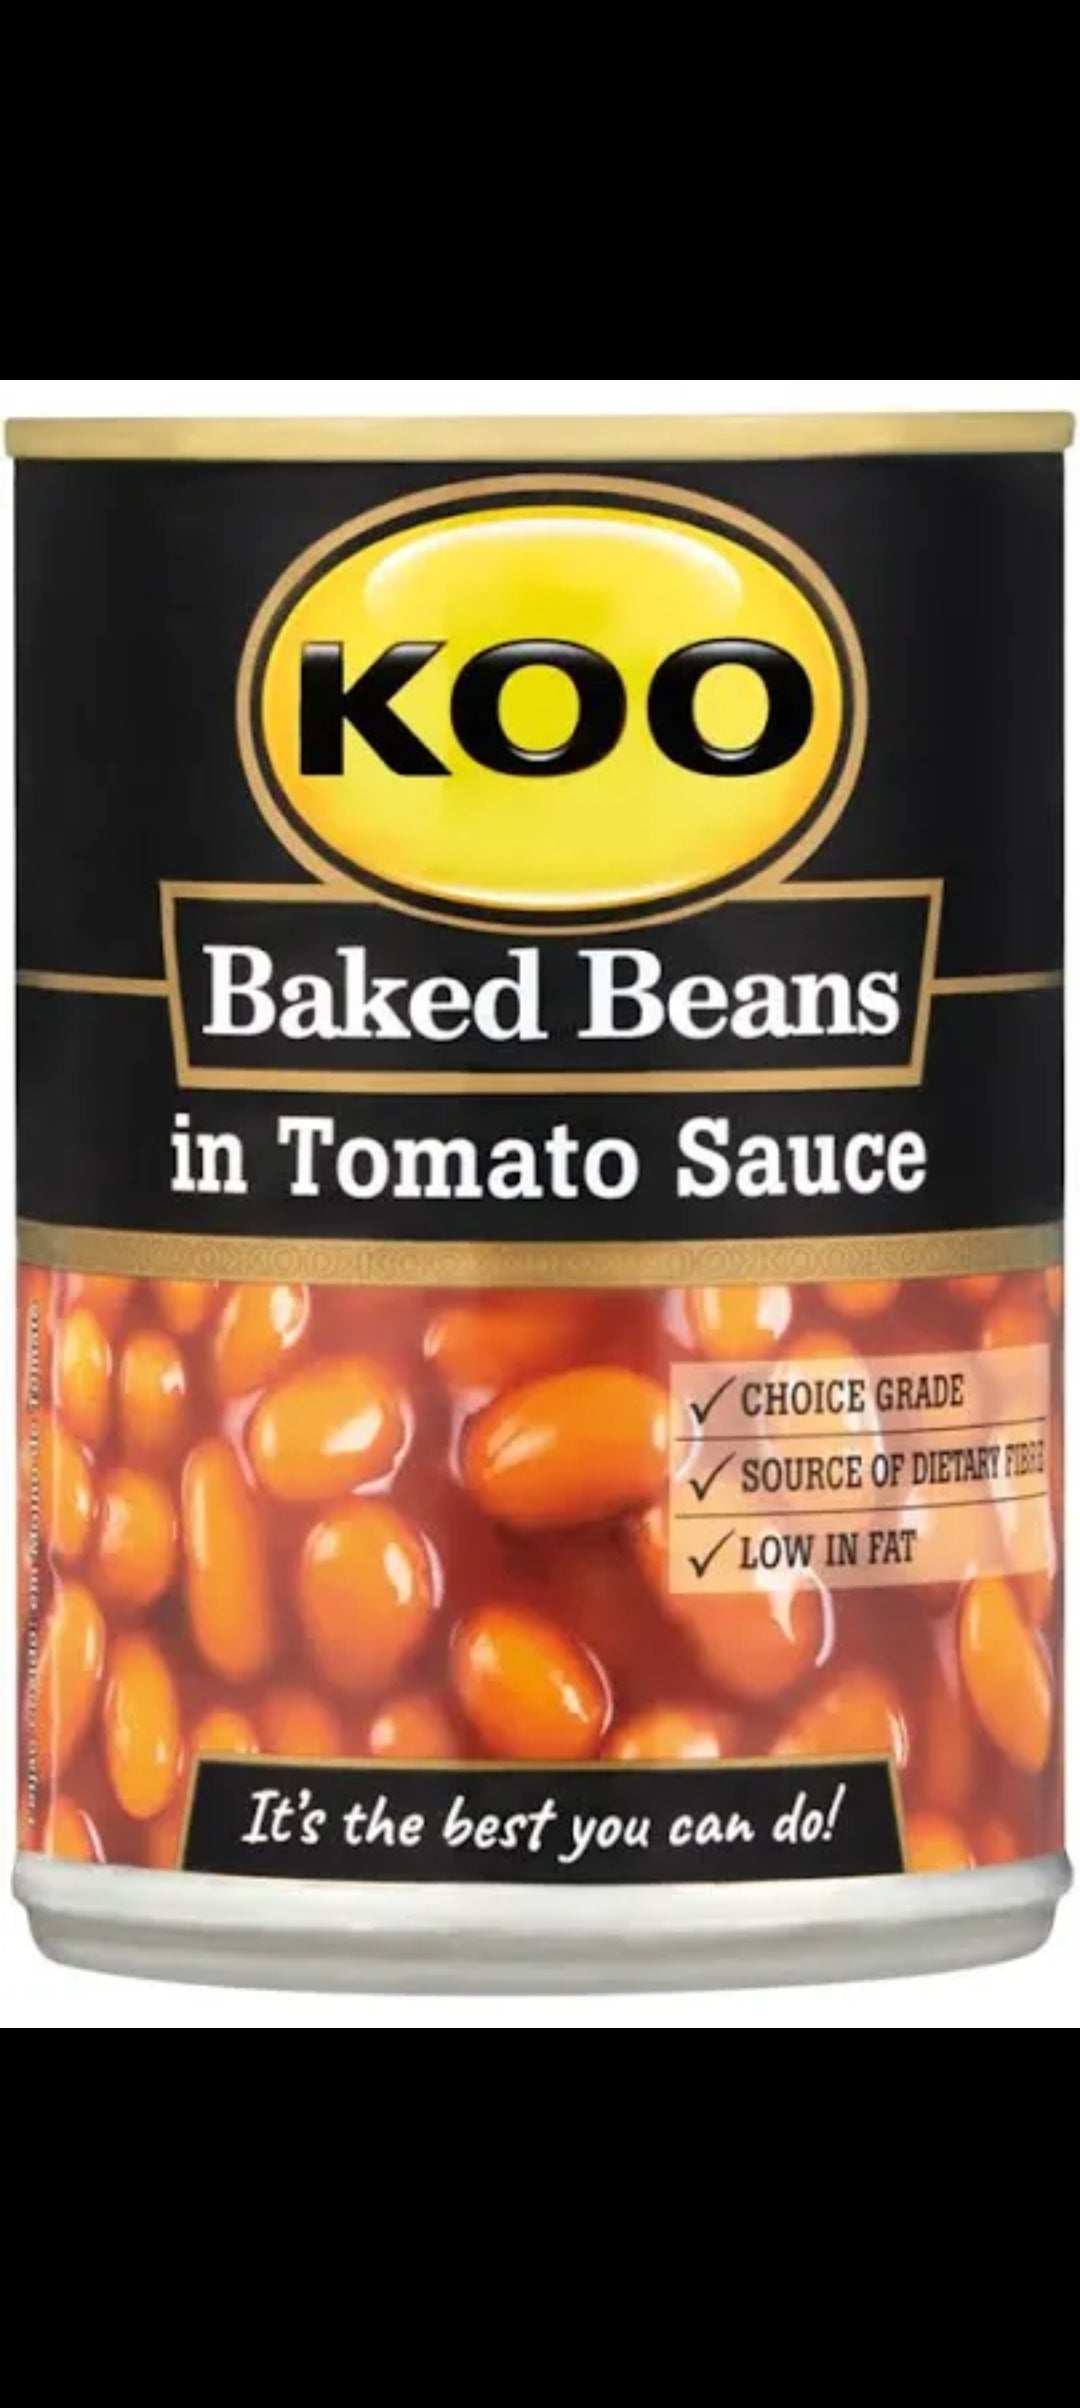 Koo baked beans